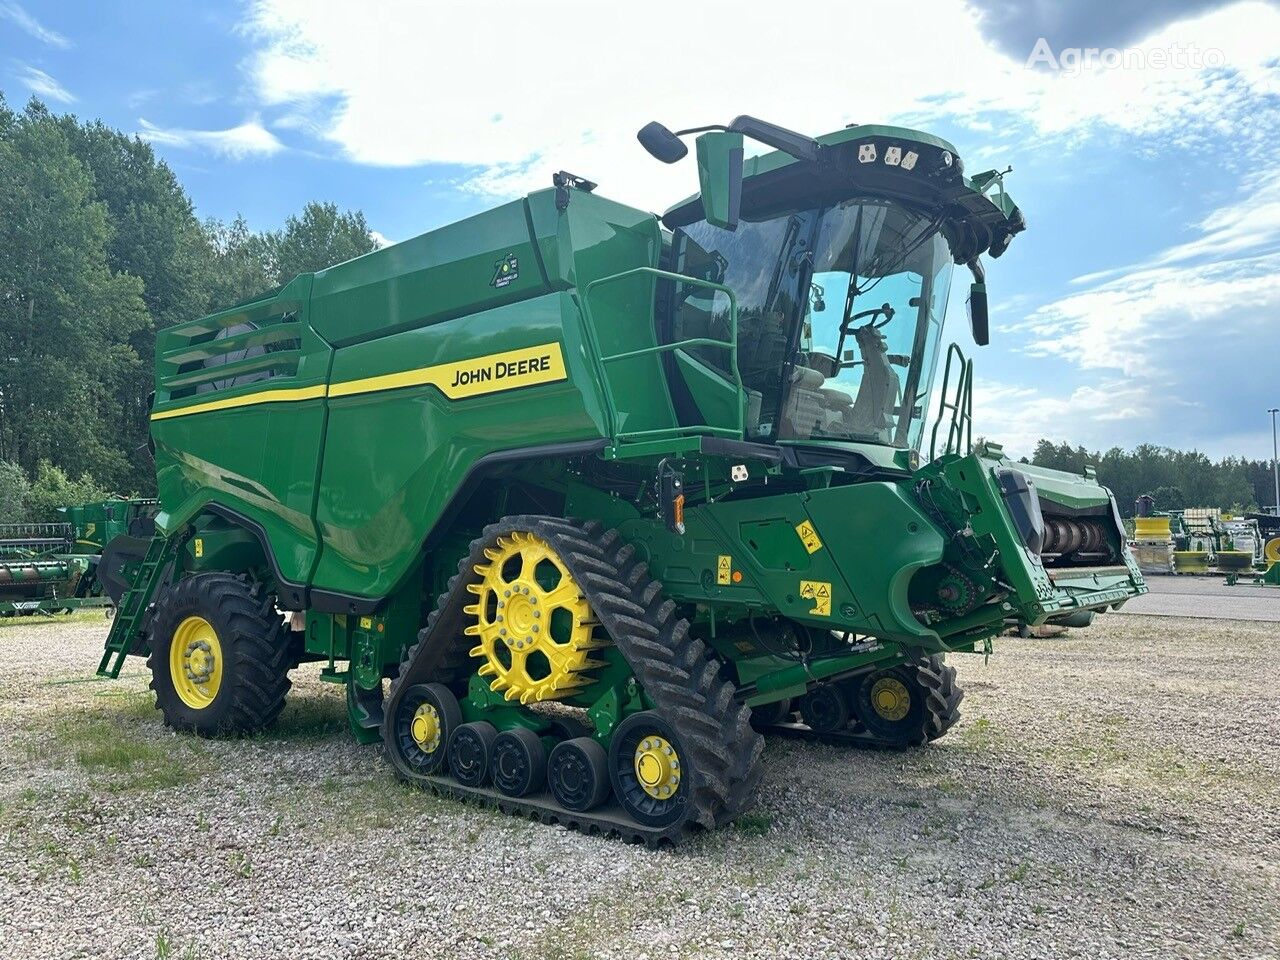 John Deere X91100 4x4 grain harvester